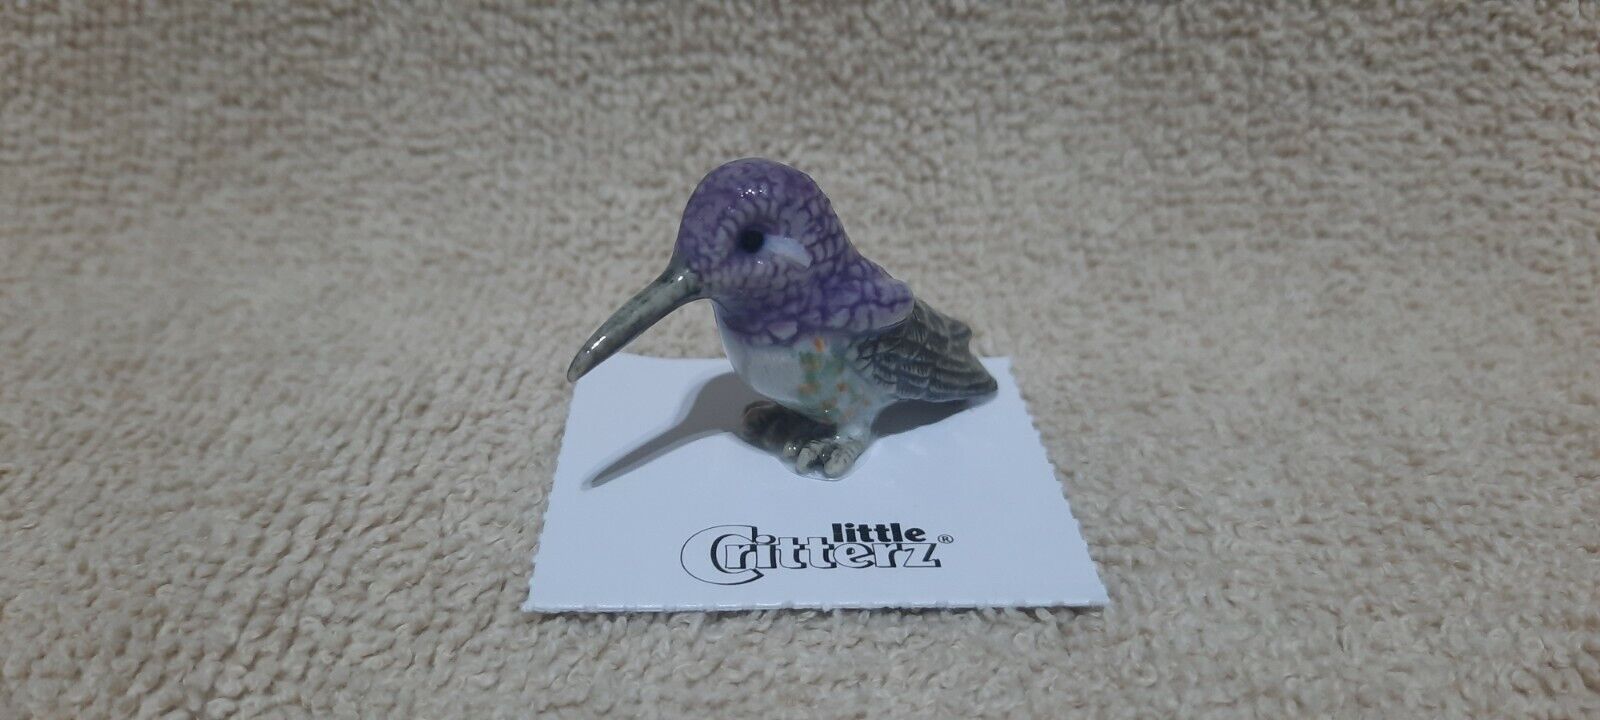 LITTLE CRITTERZ Costa's Hummingbird 